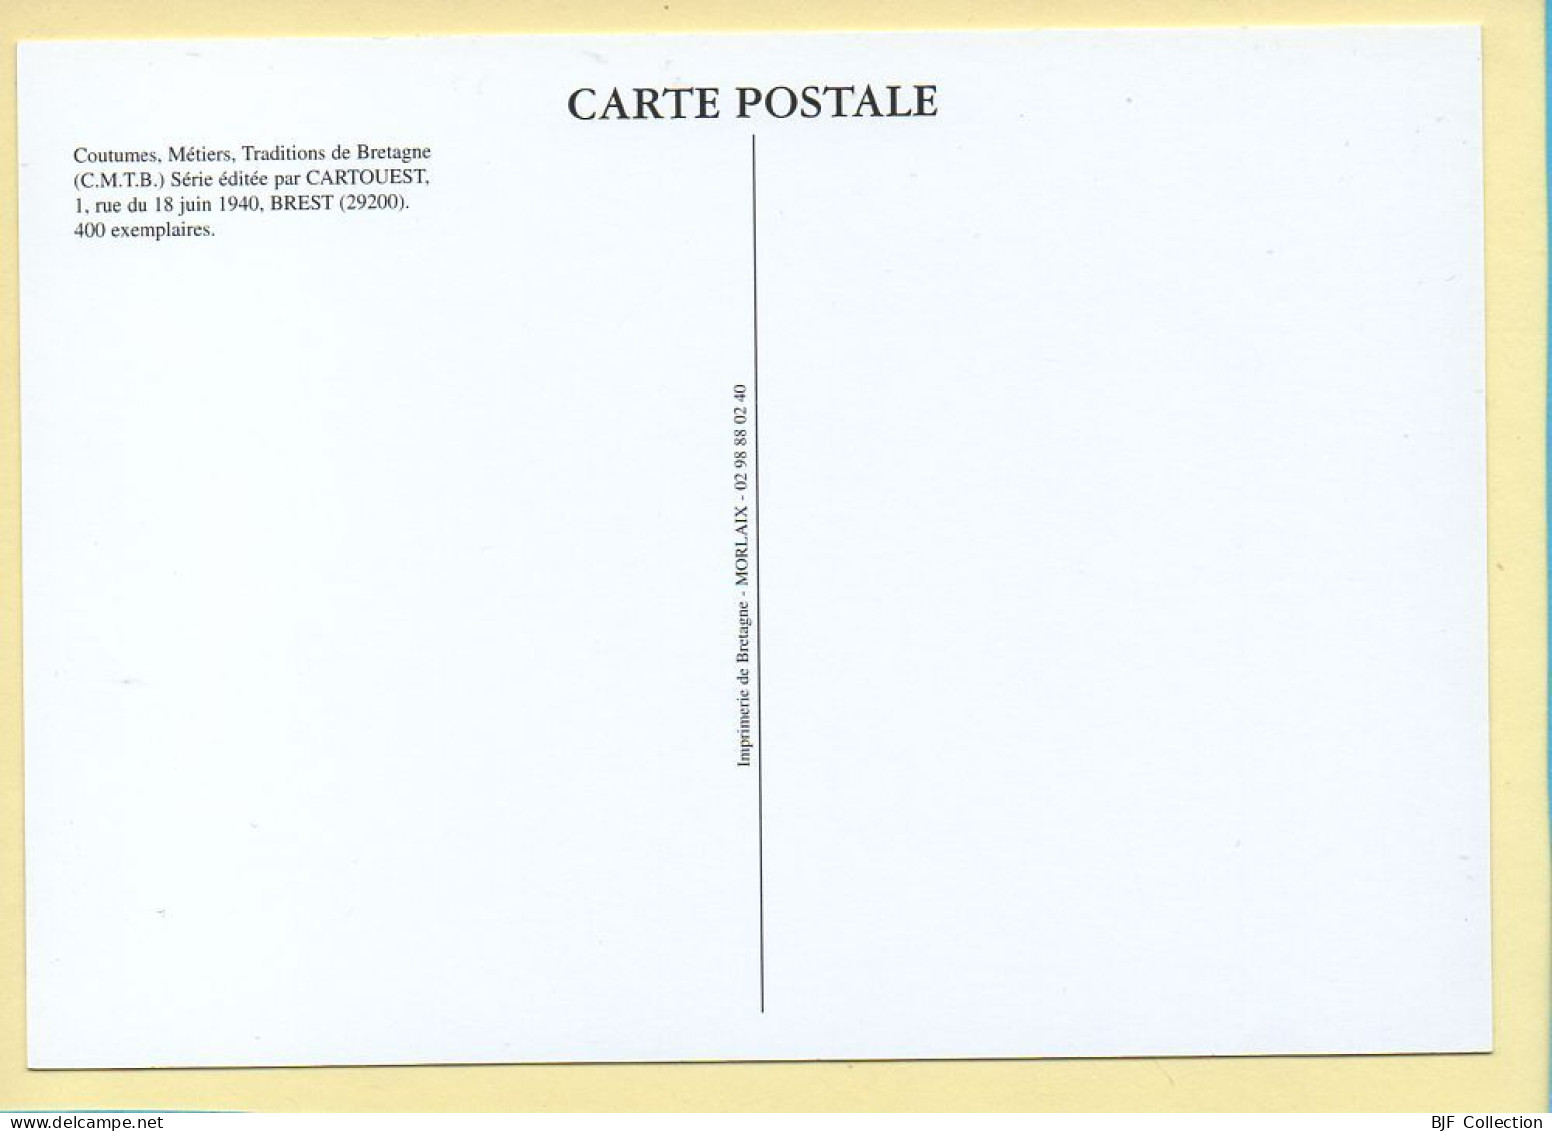 Récolte De Pommes De Terre Chez Mr LEMOINE Maraîcher / GUERANDE (44) (MAURICE Y.) C.M.T.B. N° 130 / 400 Ex (CARTOUEST) - Paysans